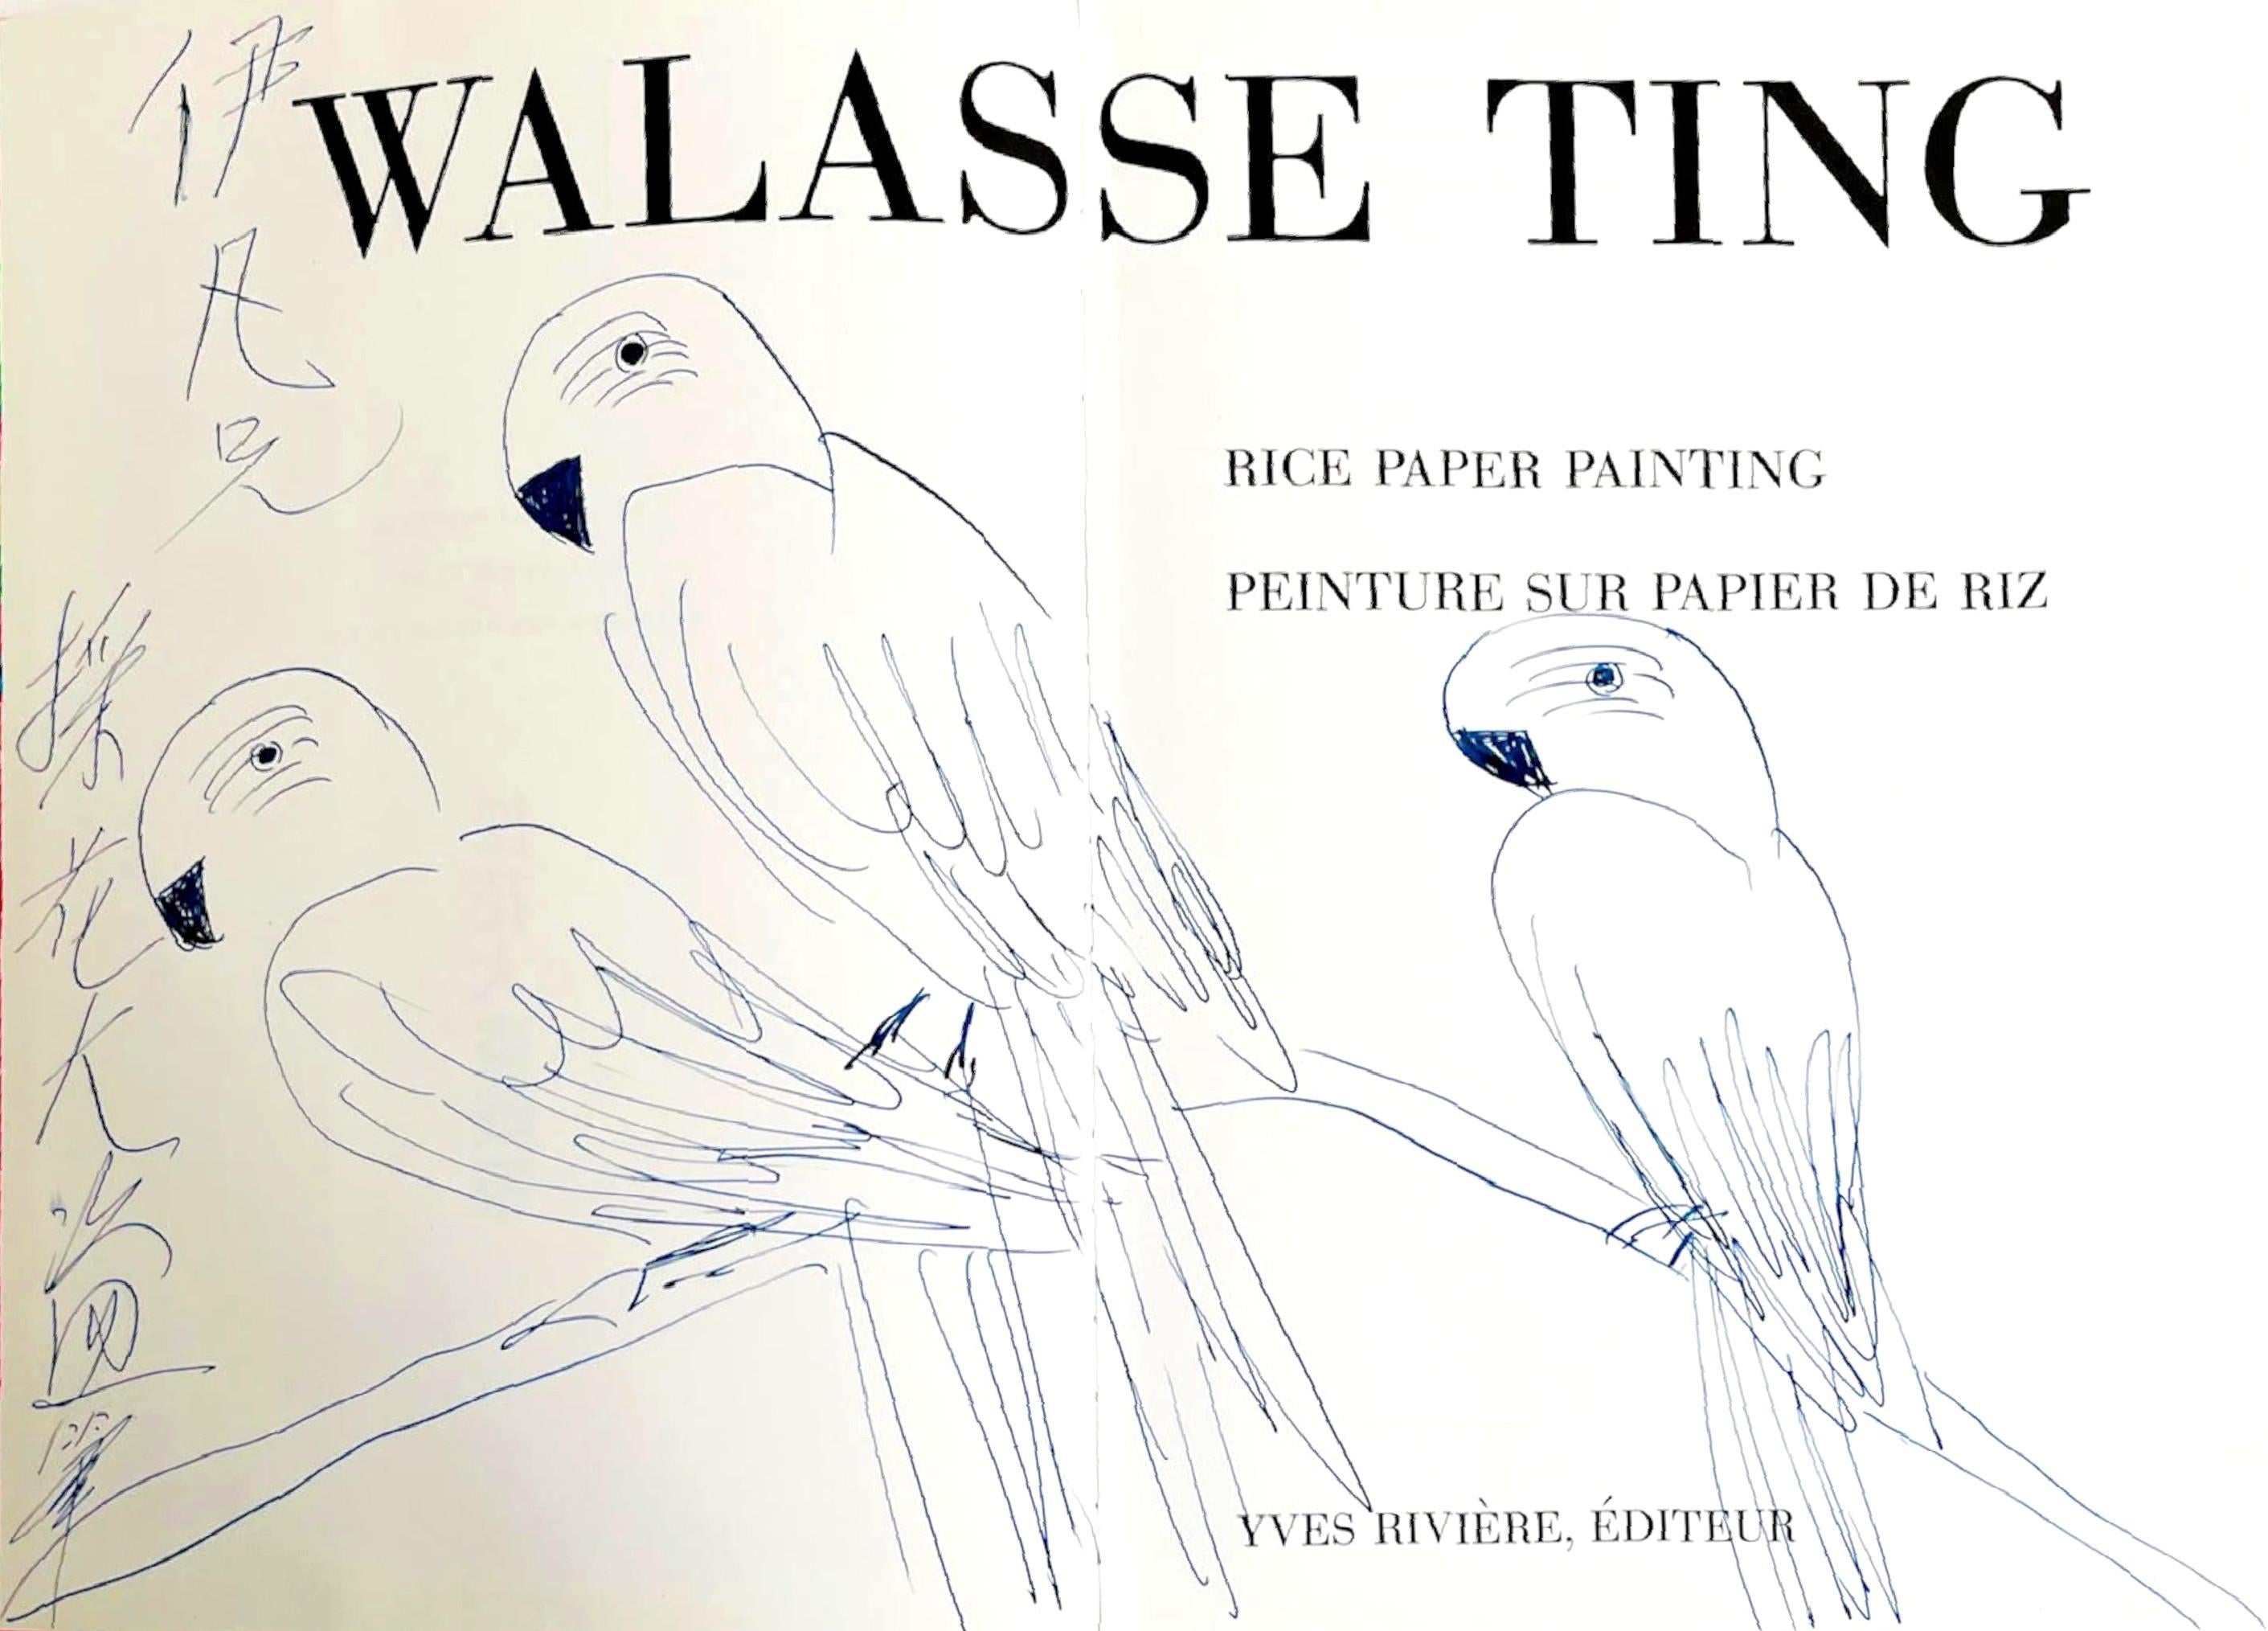 dessin original de trois perroquets dans une monographie de célèbre artiste chinois - Art de Walasse Ting